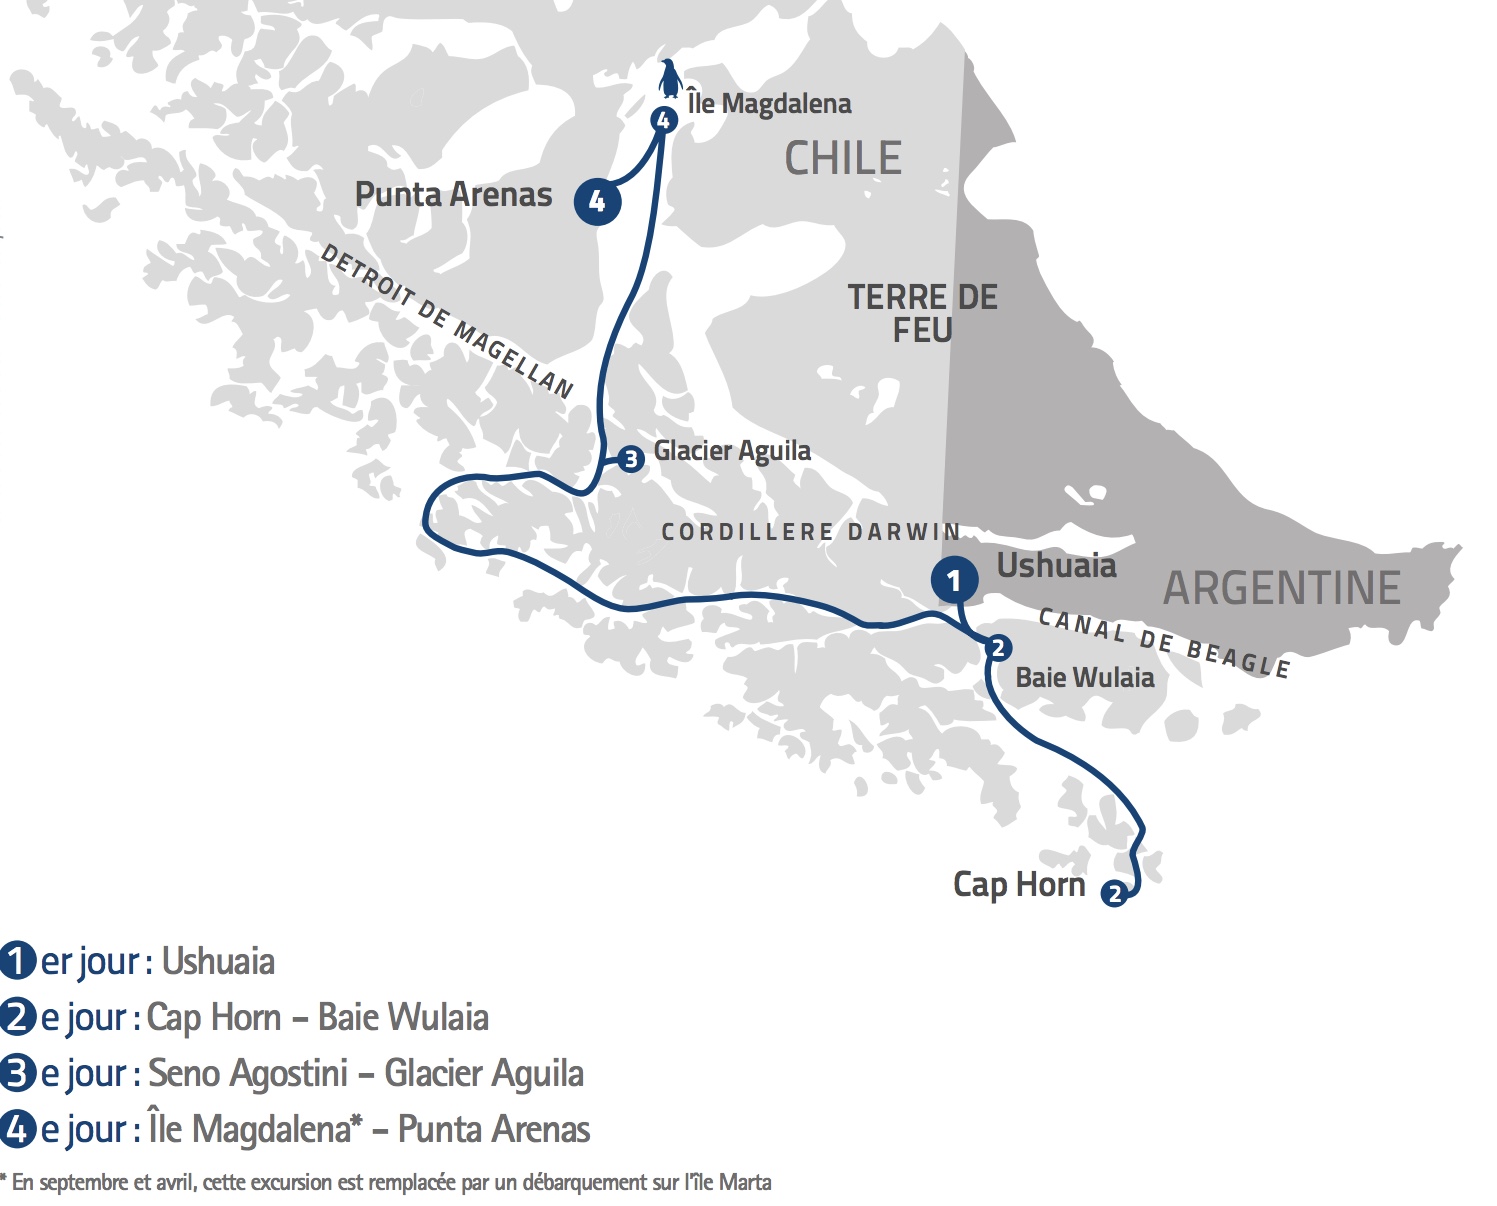 I. “Ventus Australis” : J’ai testé pour vous la nouvelle croisière Ushuaïa-Punta Arenas...